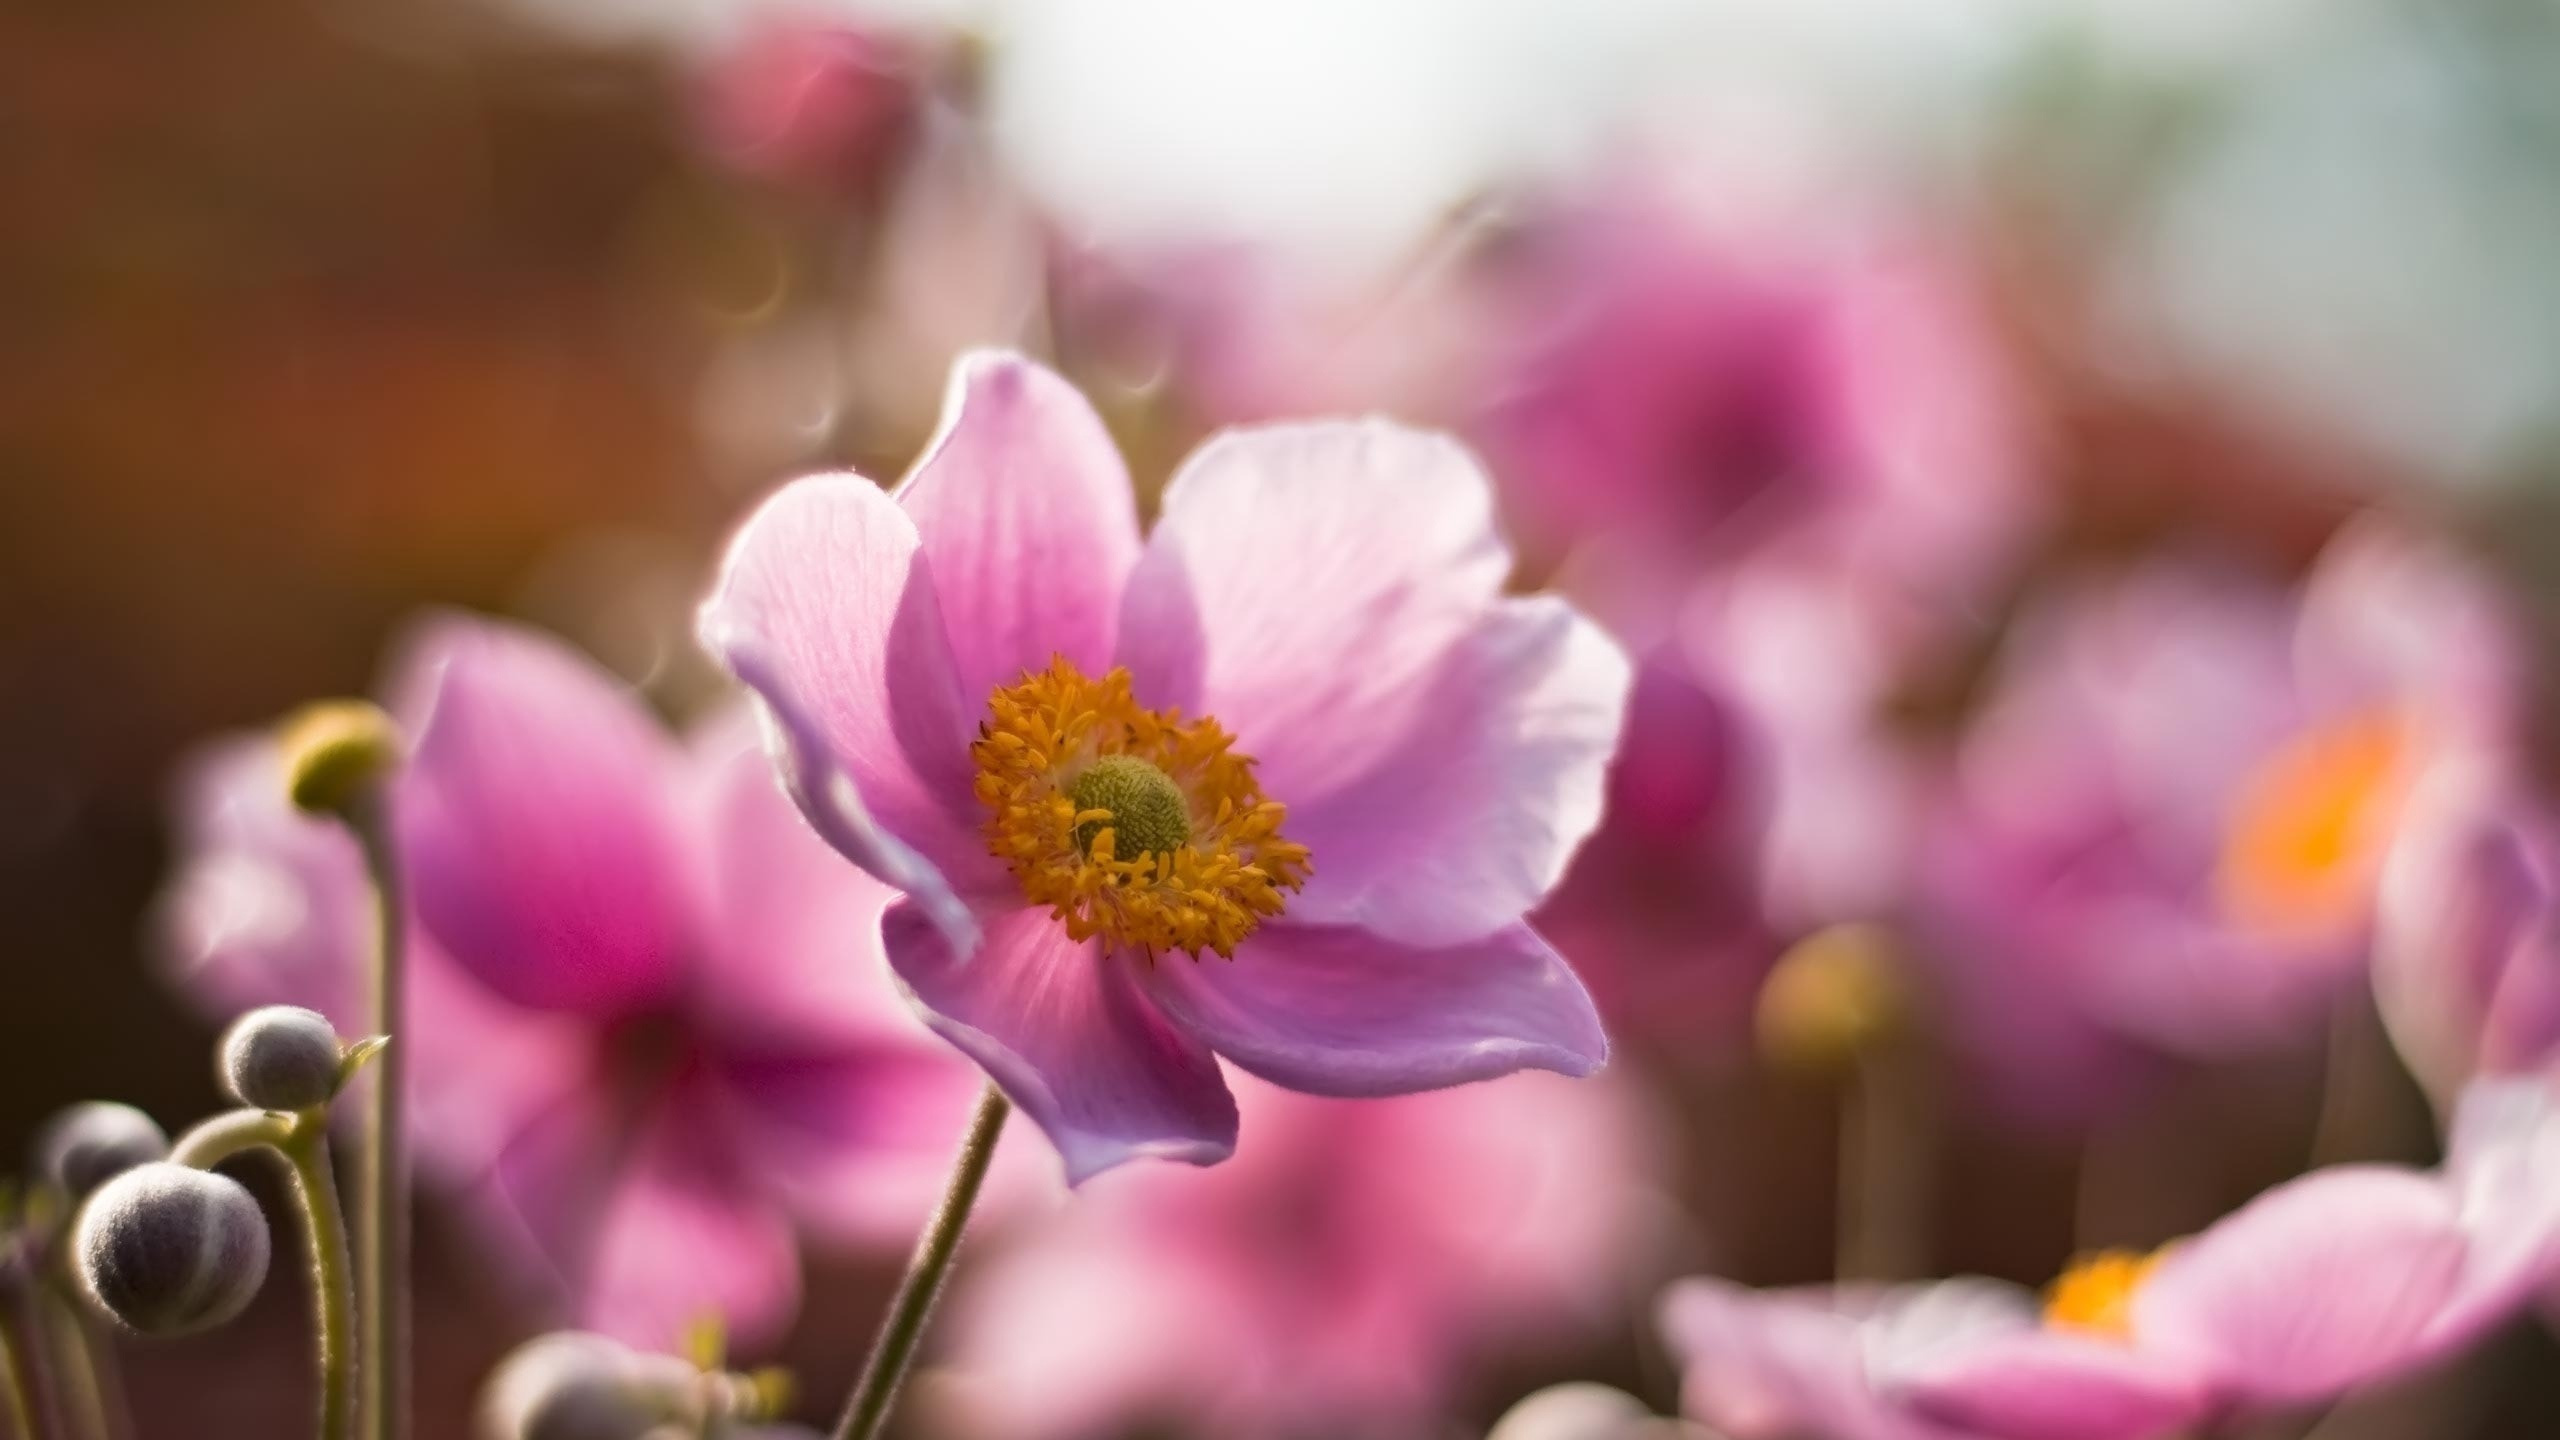 显花植物, 粉红色, 弹簧, 野花, 海葵 壁纸 2560x1440 允许